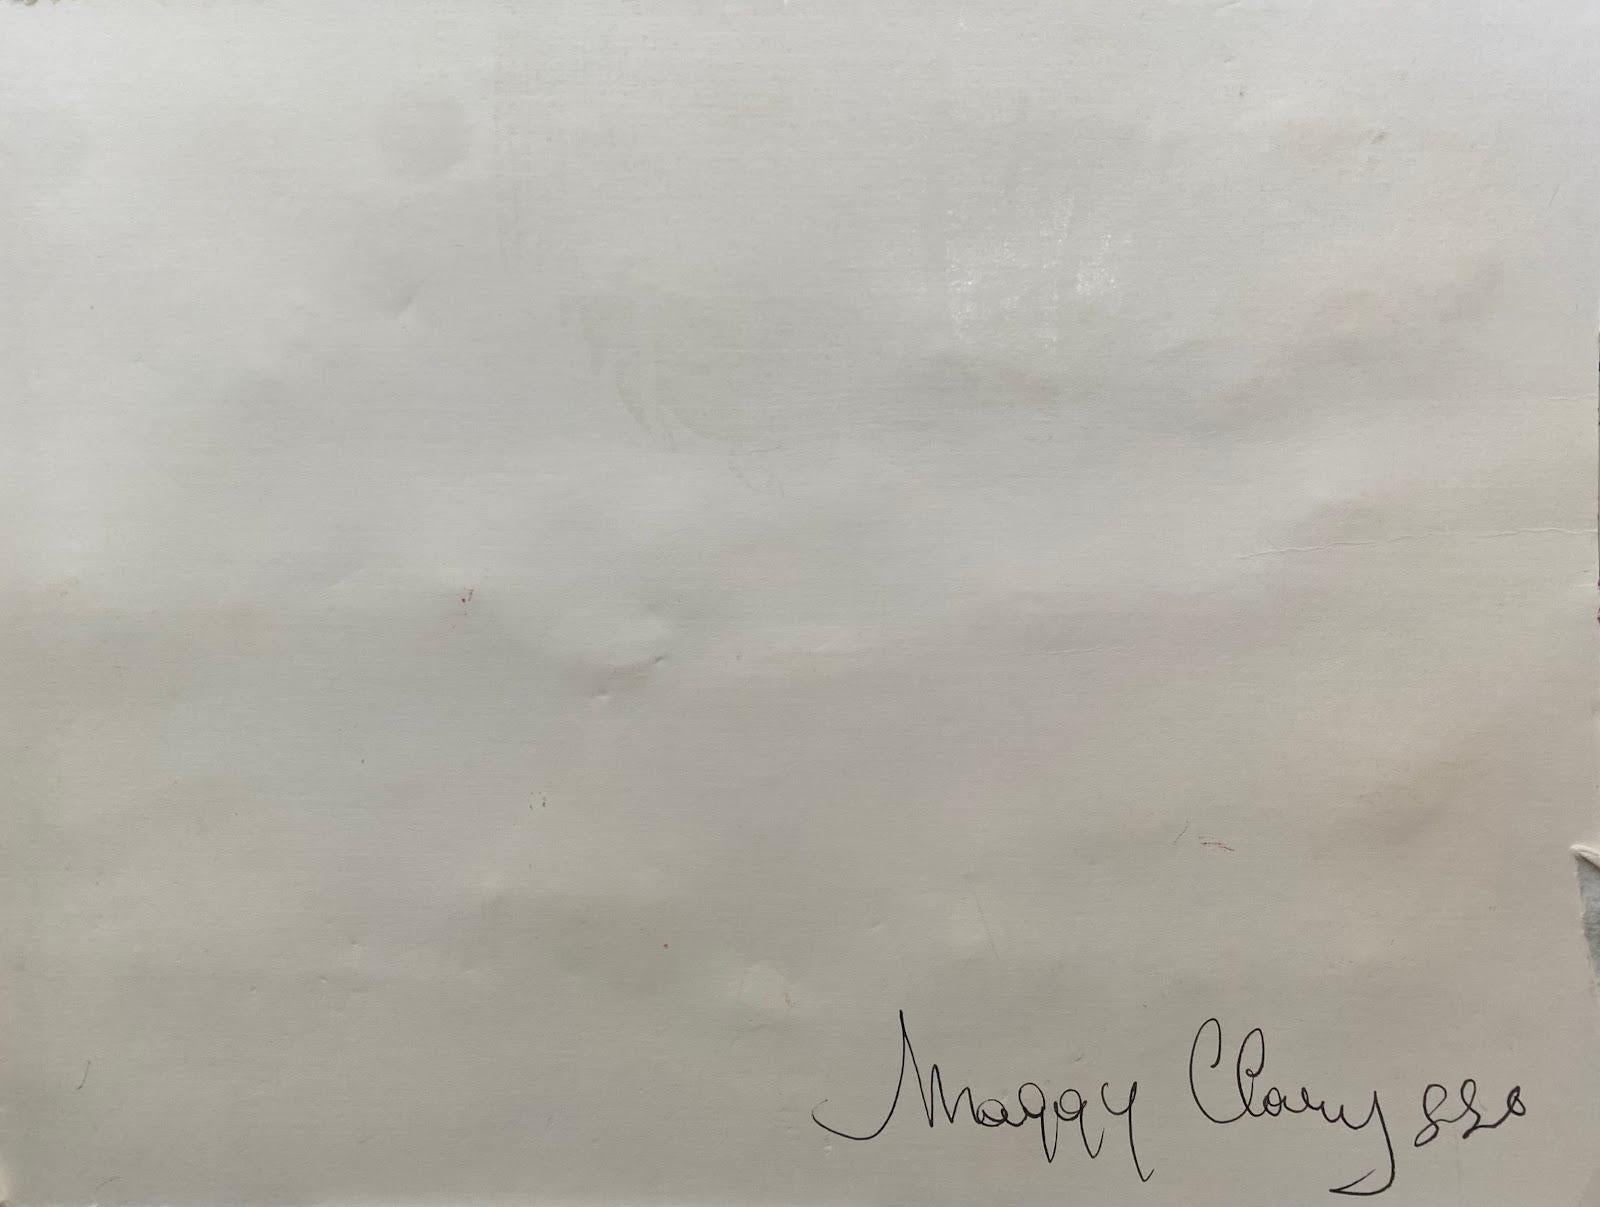 Maggy Clarysse (1931-2011)
huile sur carton épais, non encadrée
7 x 9.5 pouces
initiales signées                                                                             
état : excellent
provenance : toutes les peintures que nous avons de cet